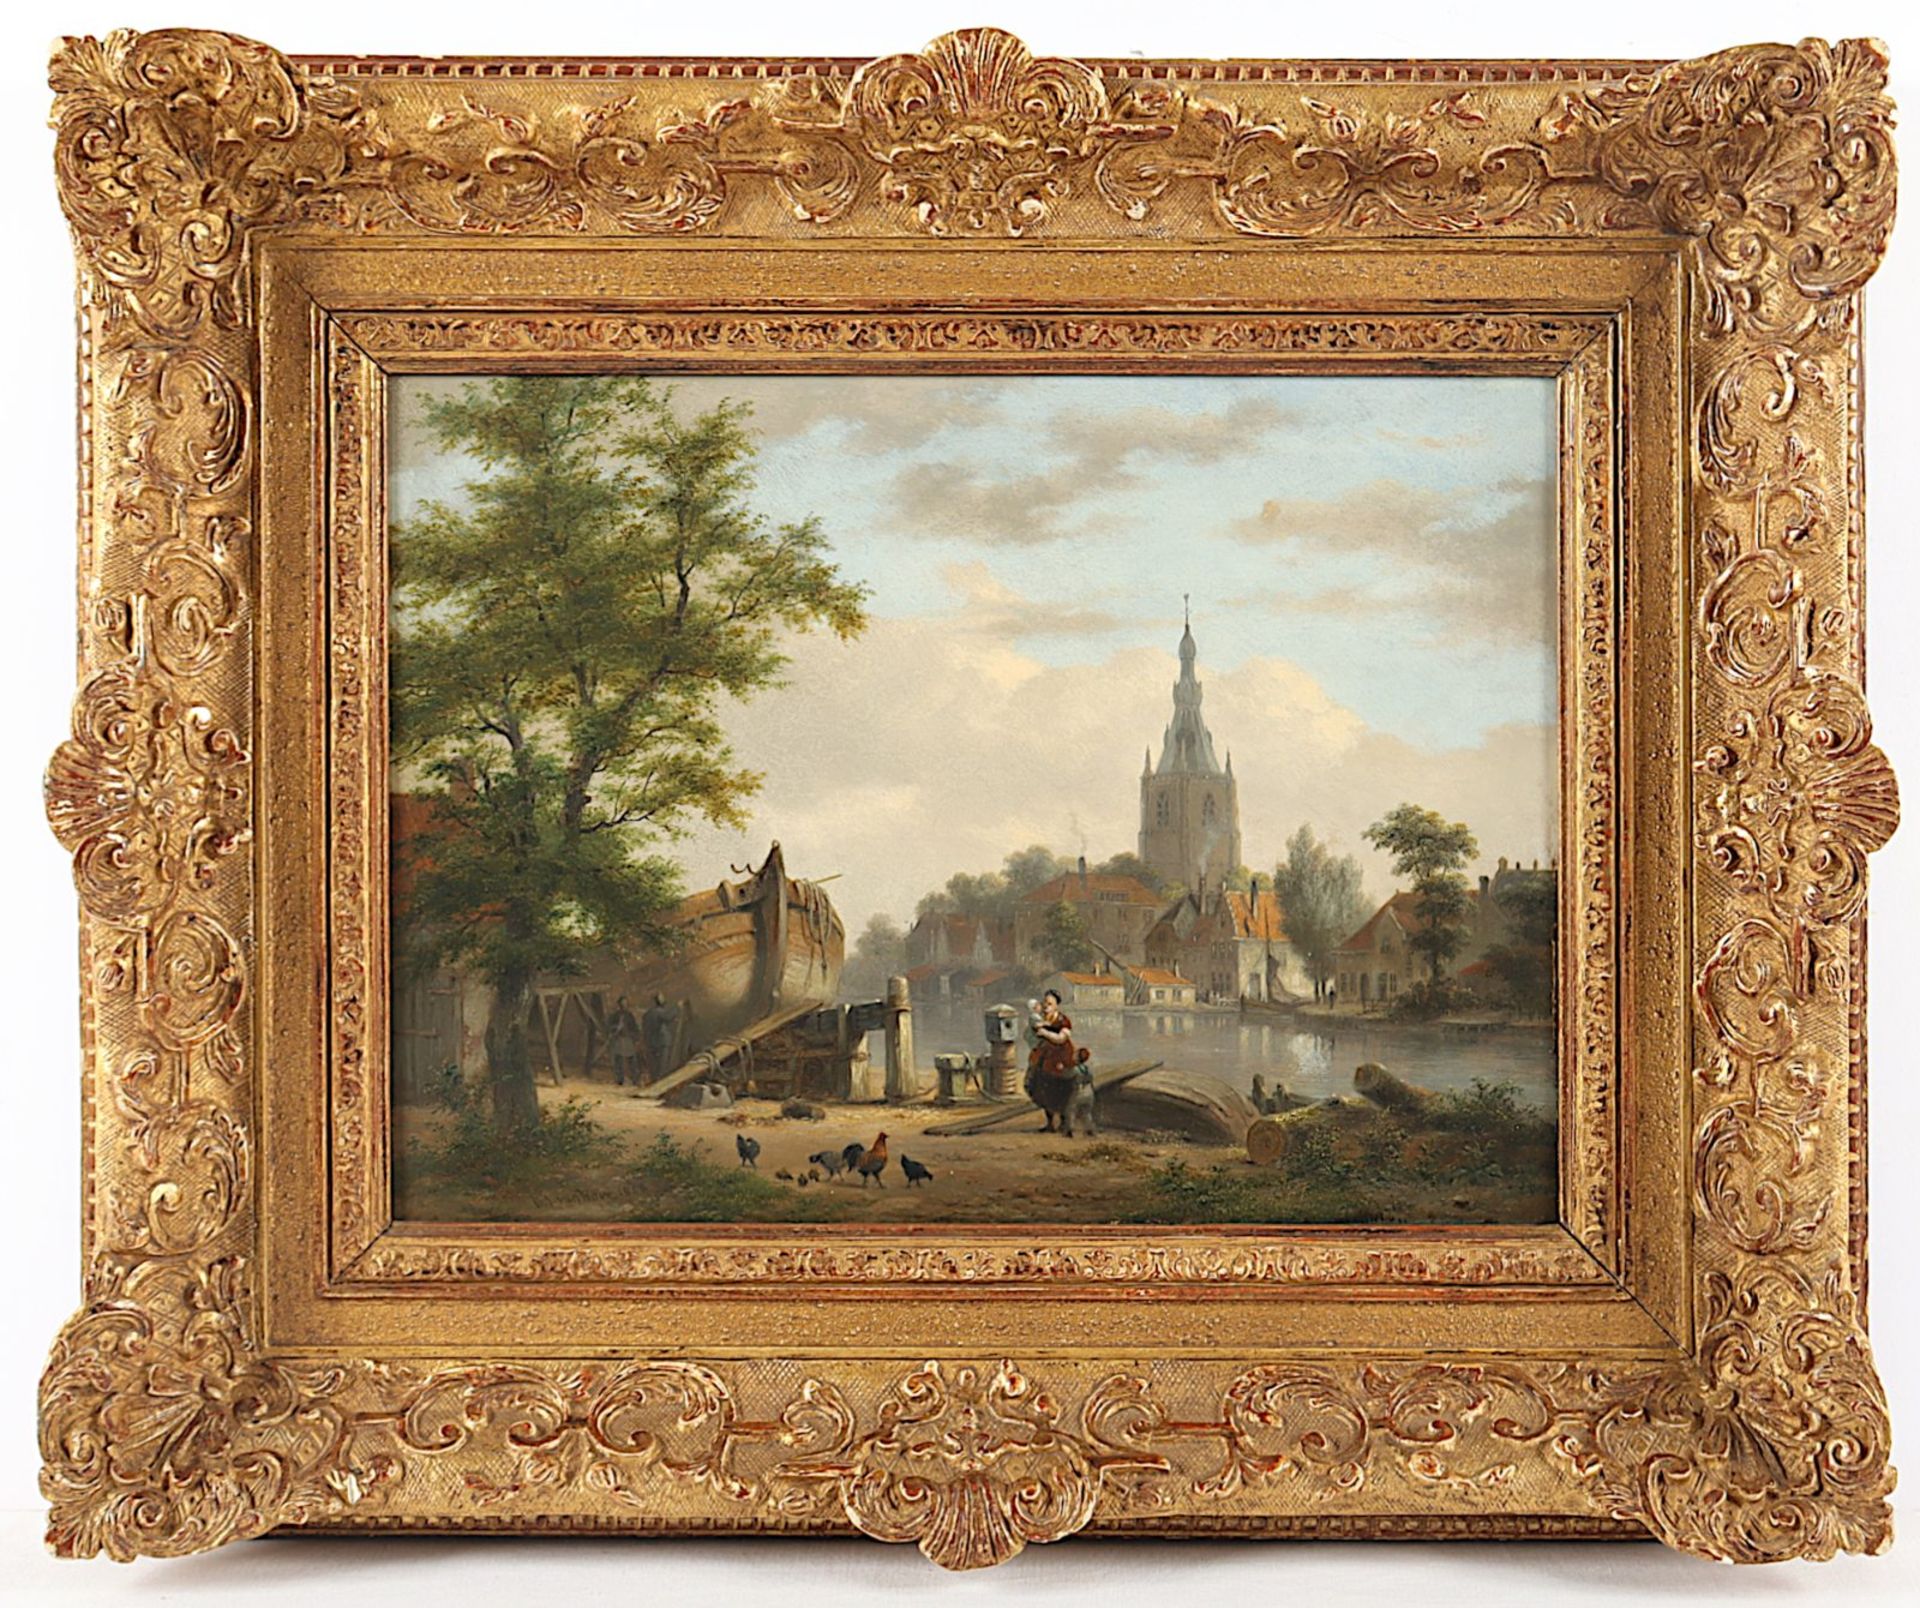 Van Hove, Bartholomeus Johannes (1790-1880), "Ansicht von Overschie", R.